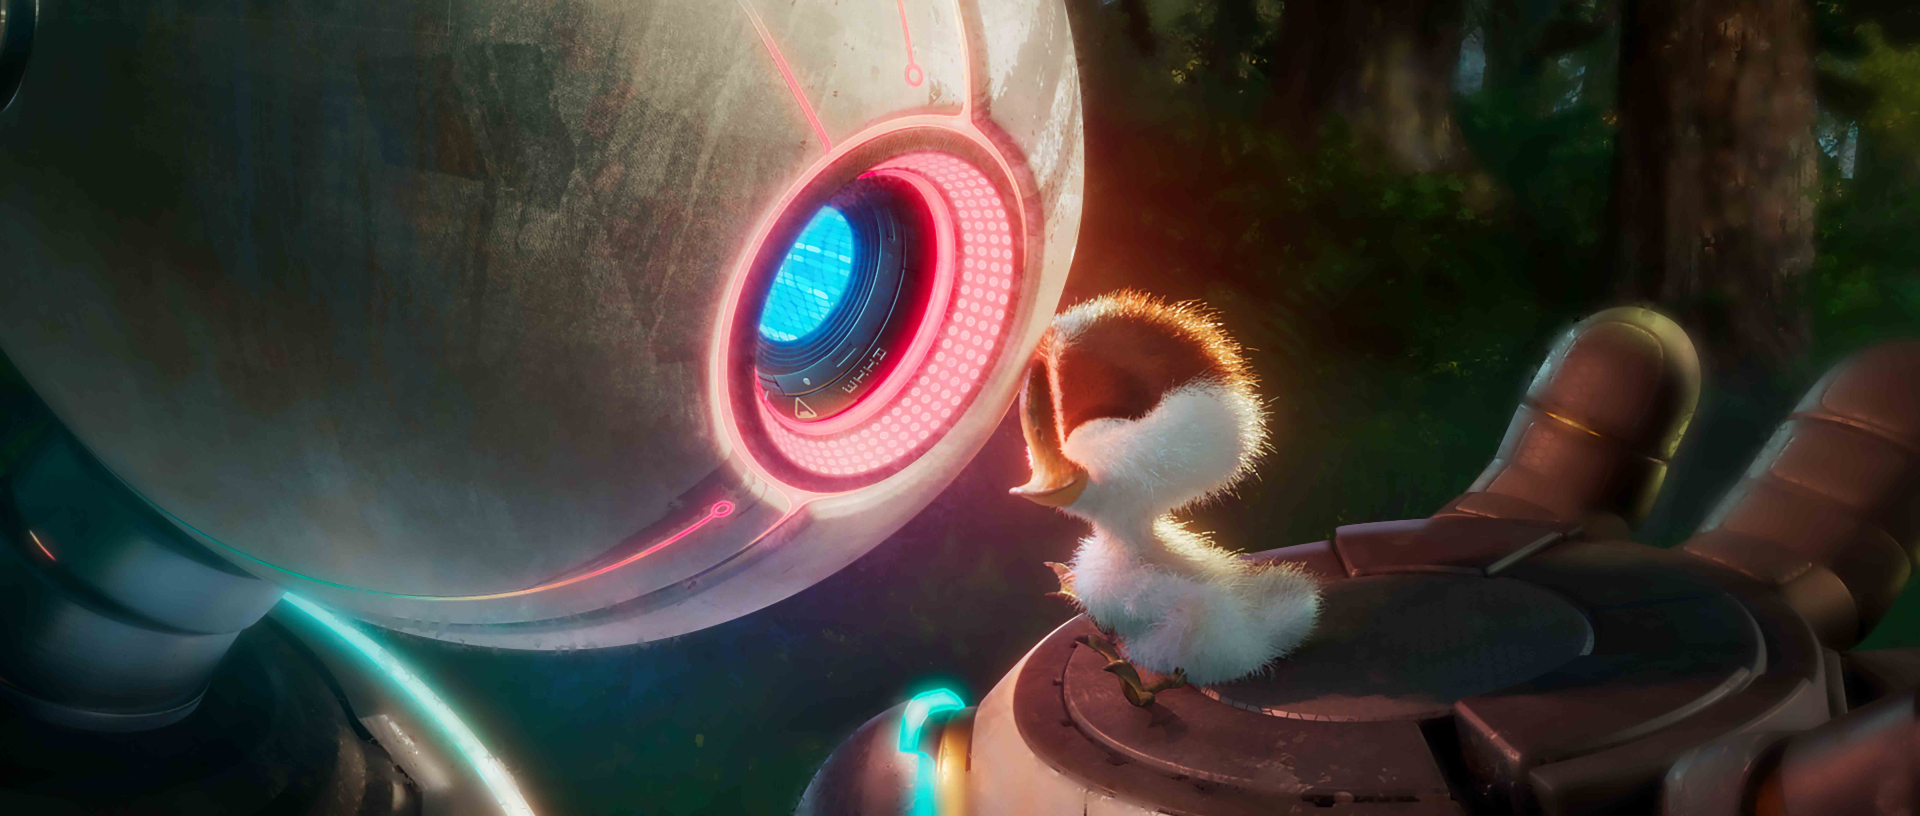 The Wild Robot - Bom tấn hoạt hình tháng 10 nhà DreamWorks nhá hàng trailer mới đầy cảm xúc - ảnh 3